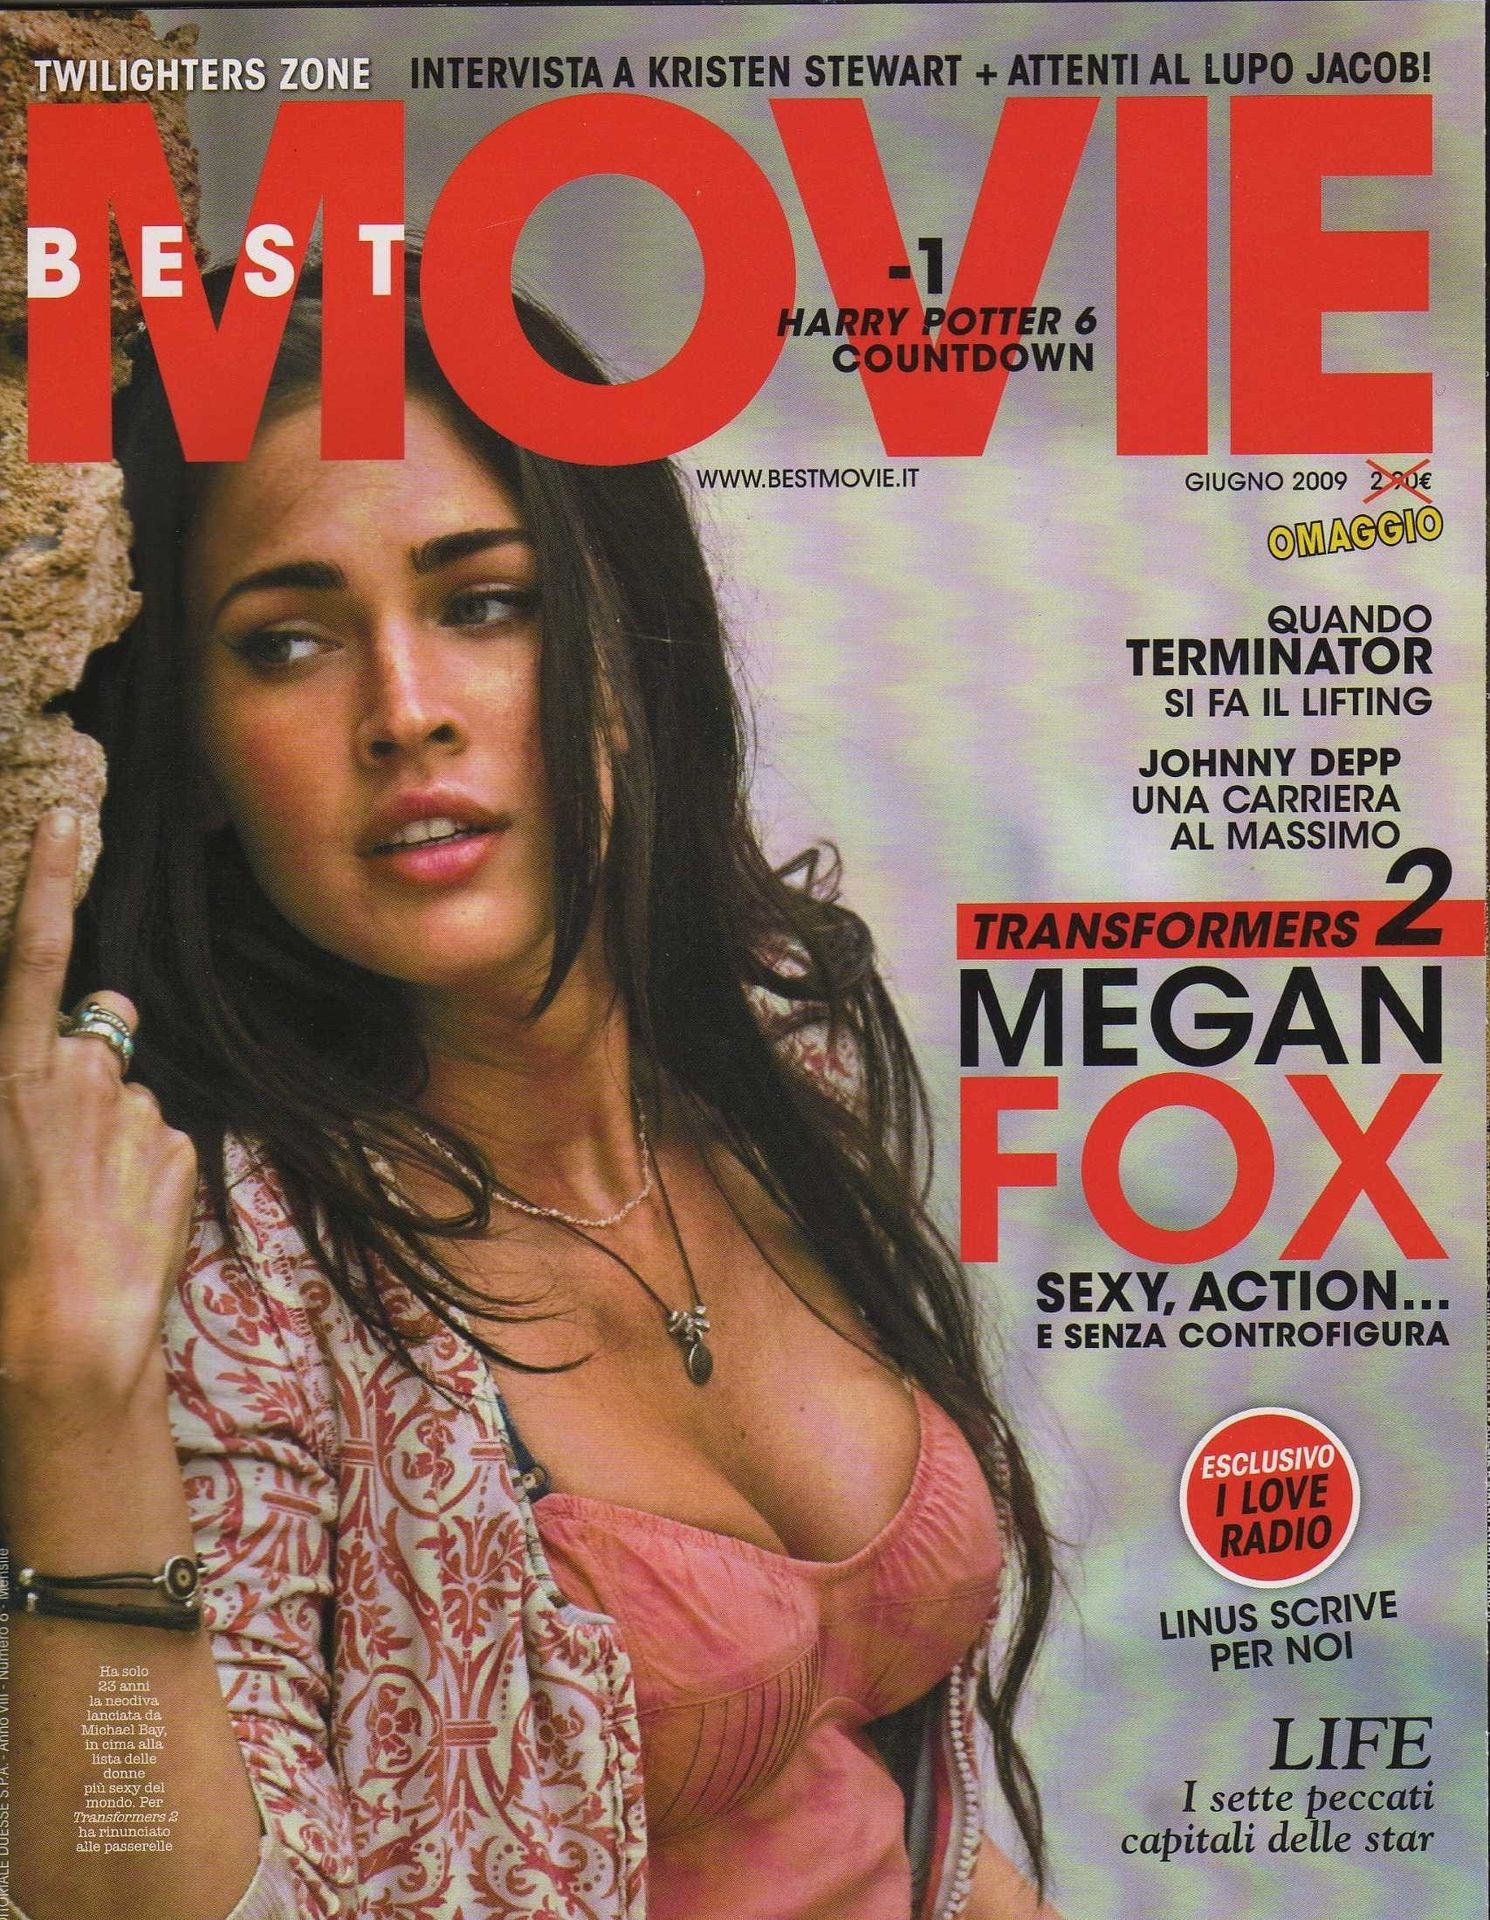 Megan-Fox-Sexy-106-thefappeningblog.com_.jpg